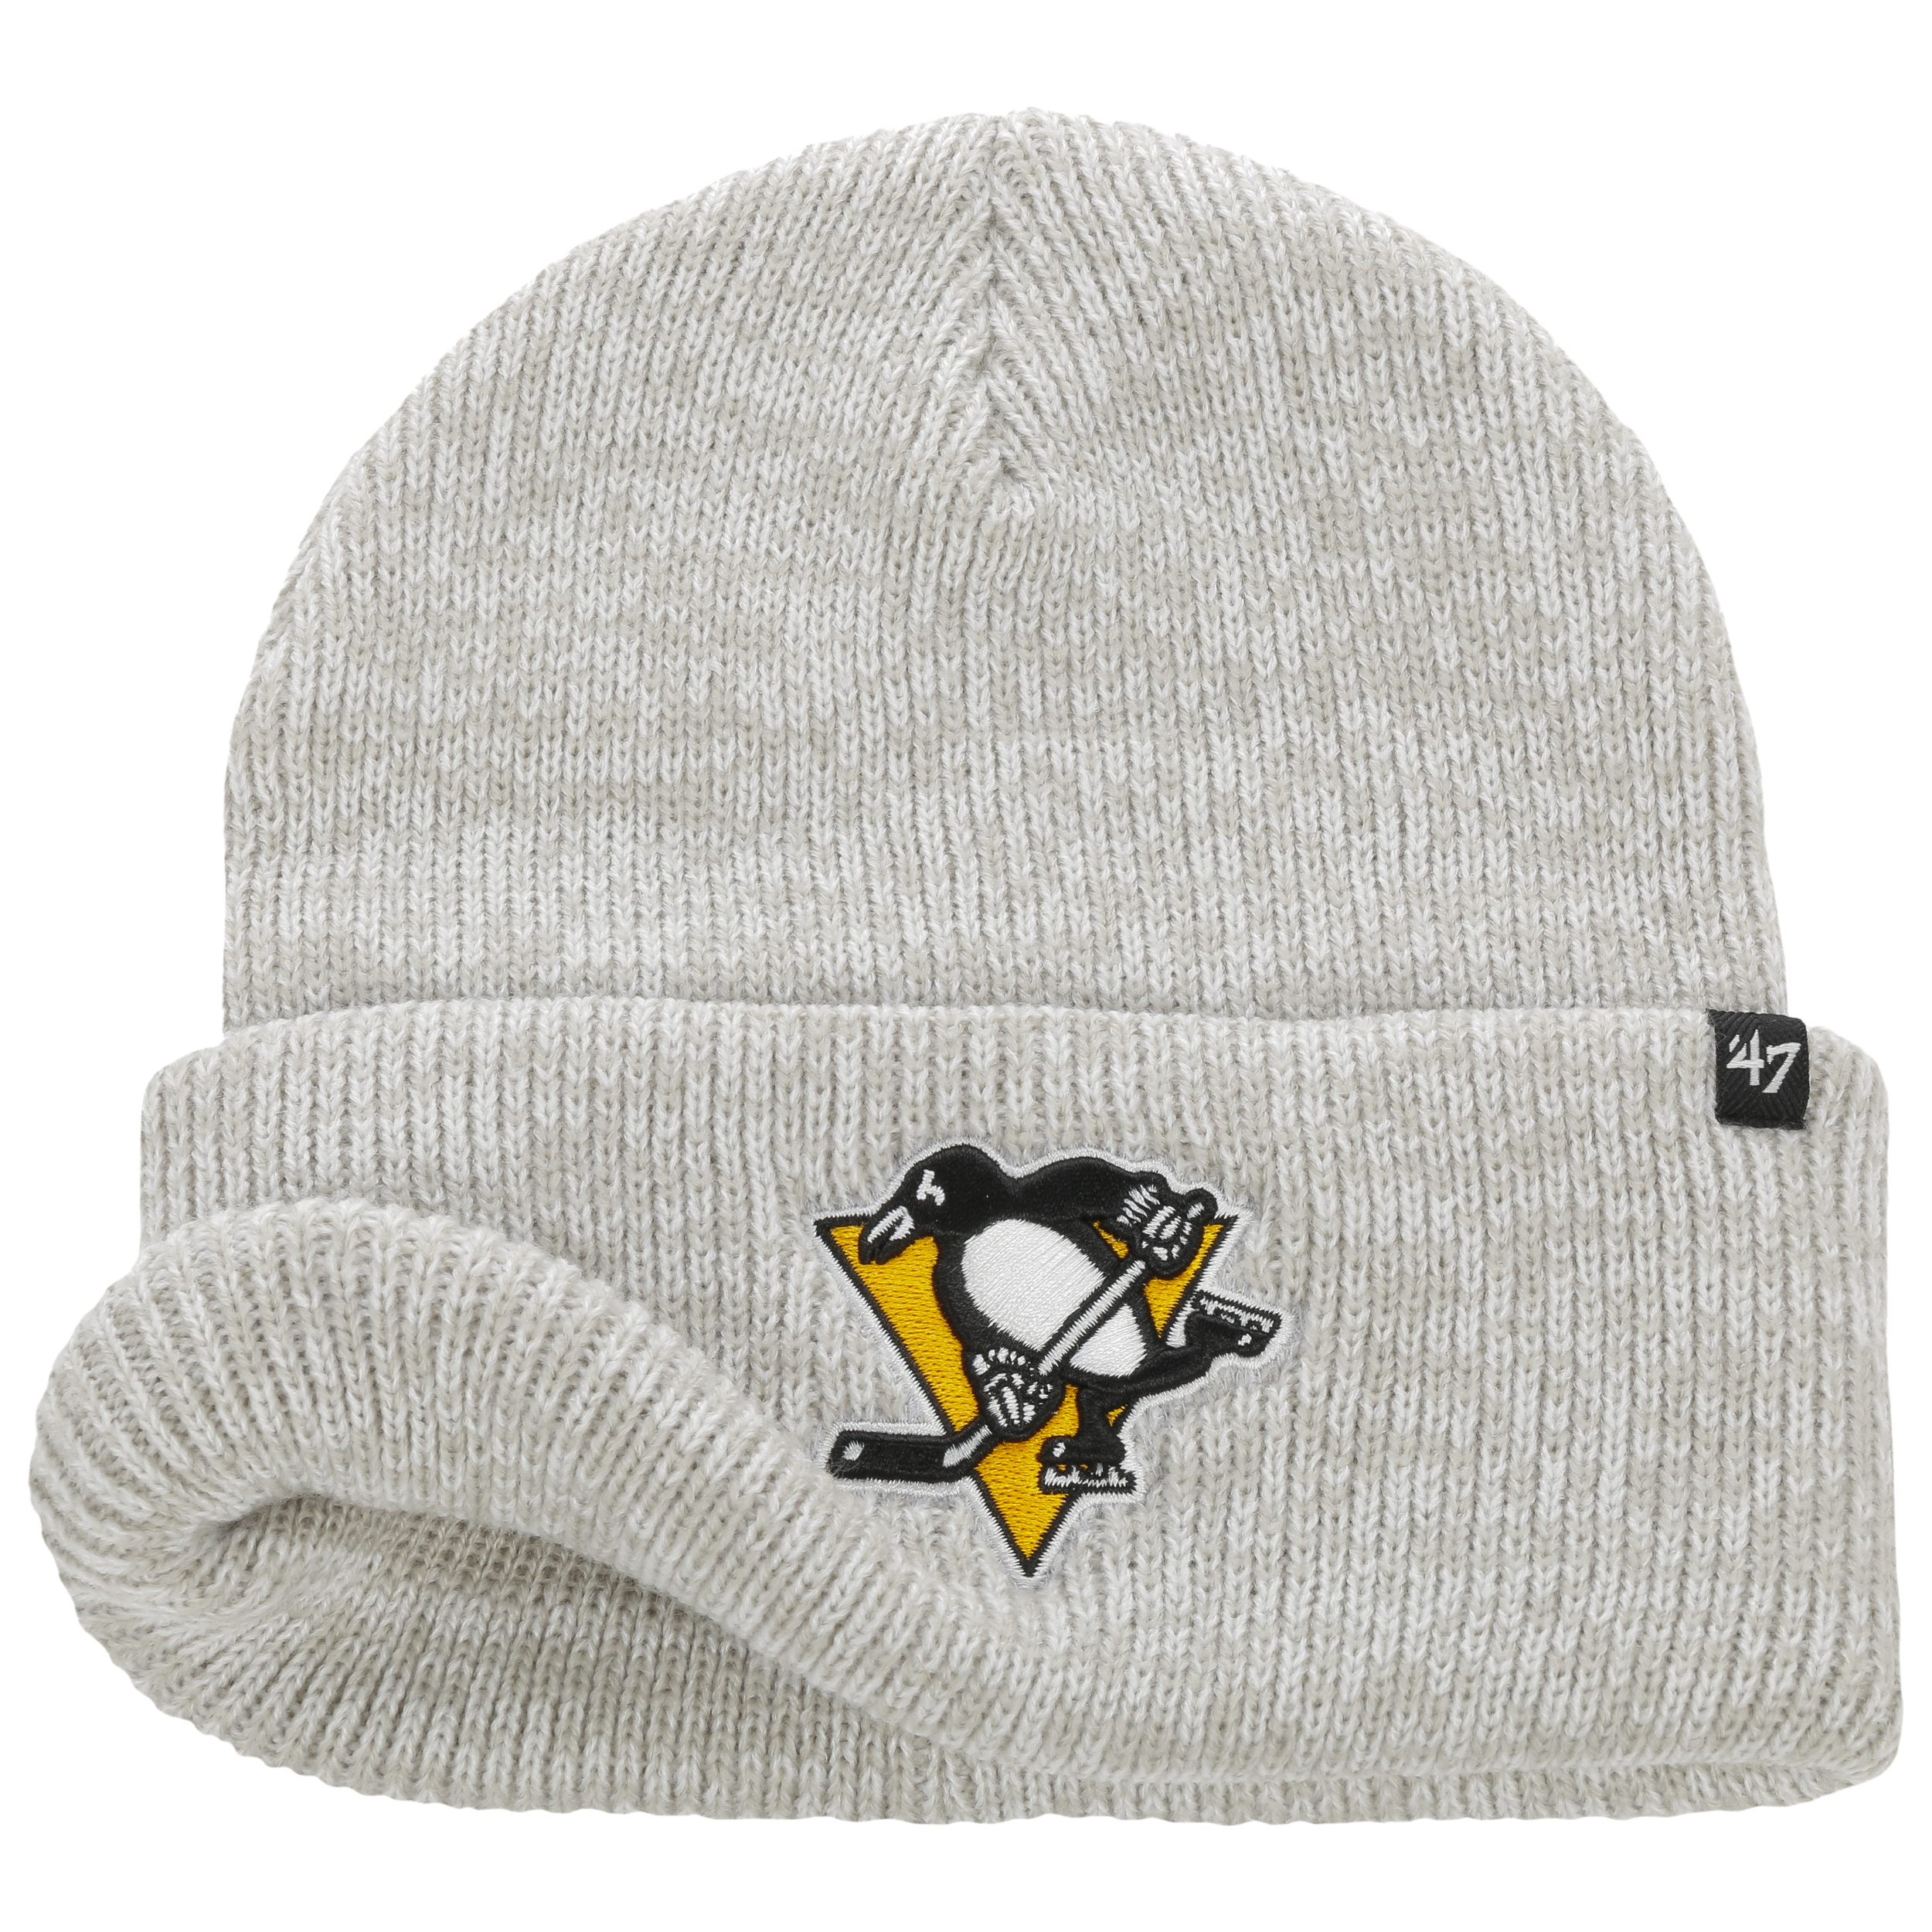 McKoy Pittsburgh Penguins 47 Brand Cuff Beanie Wintermütze 